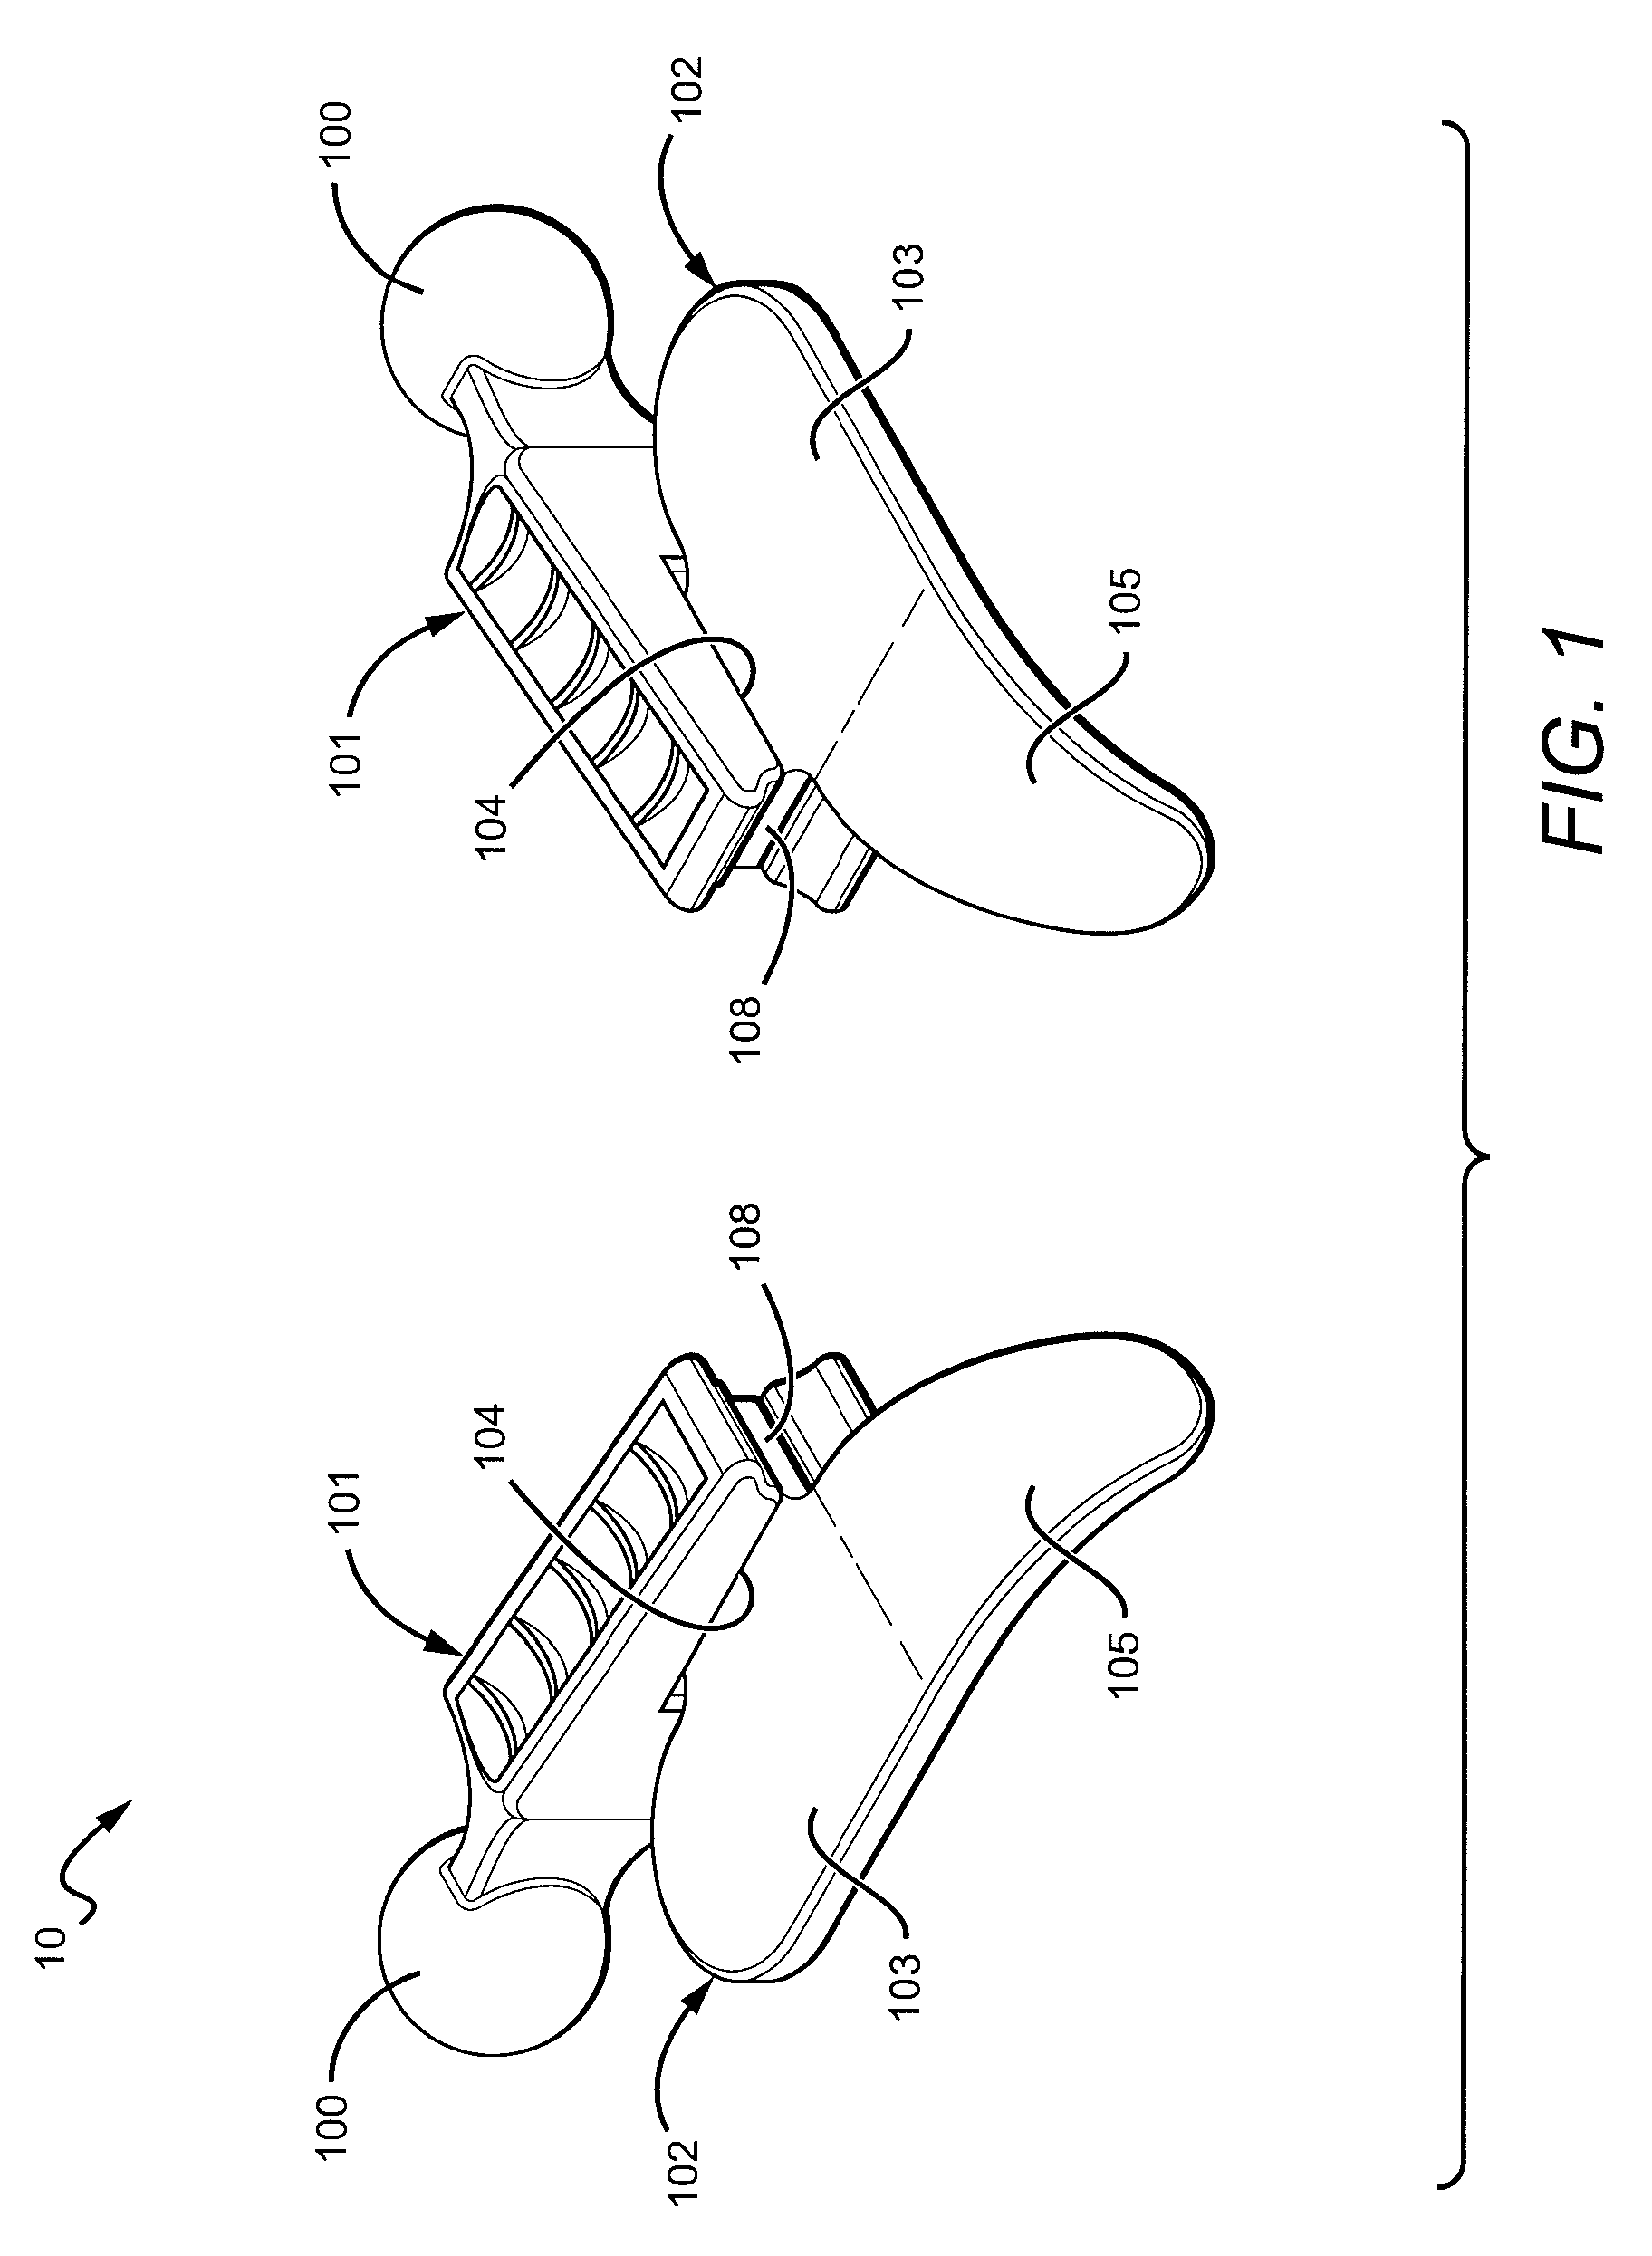 Combination Bite Block, Tongue Depressor/Retractor And Airway